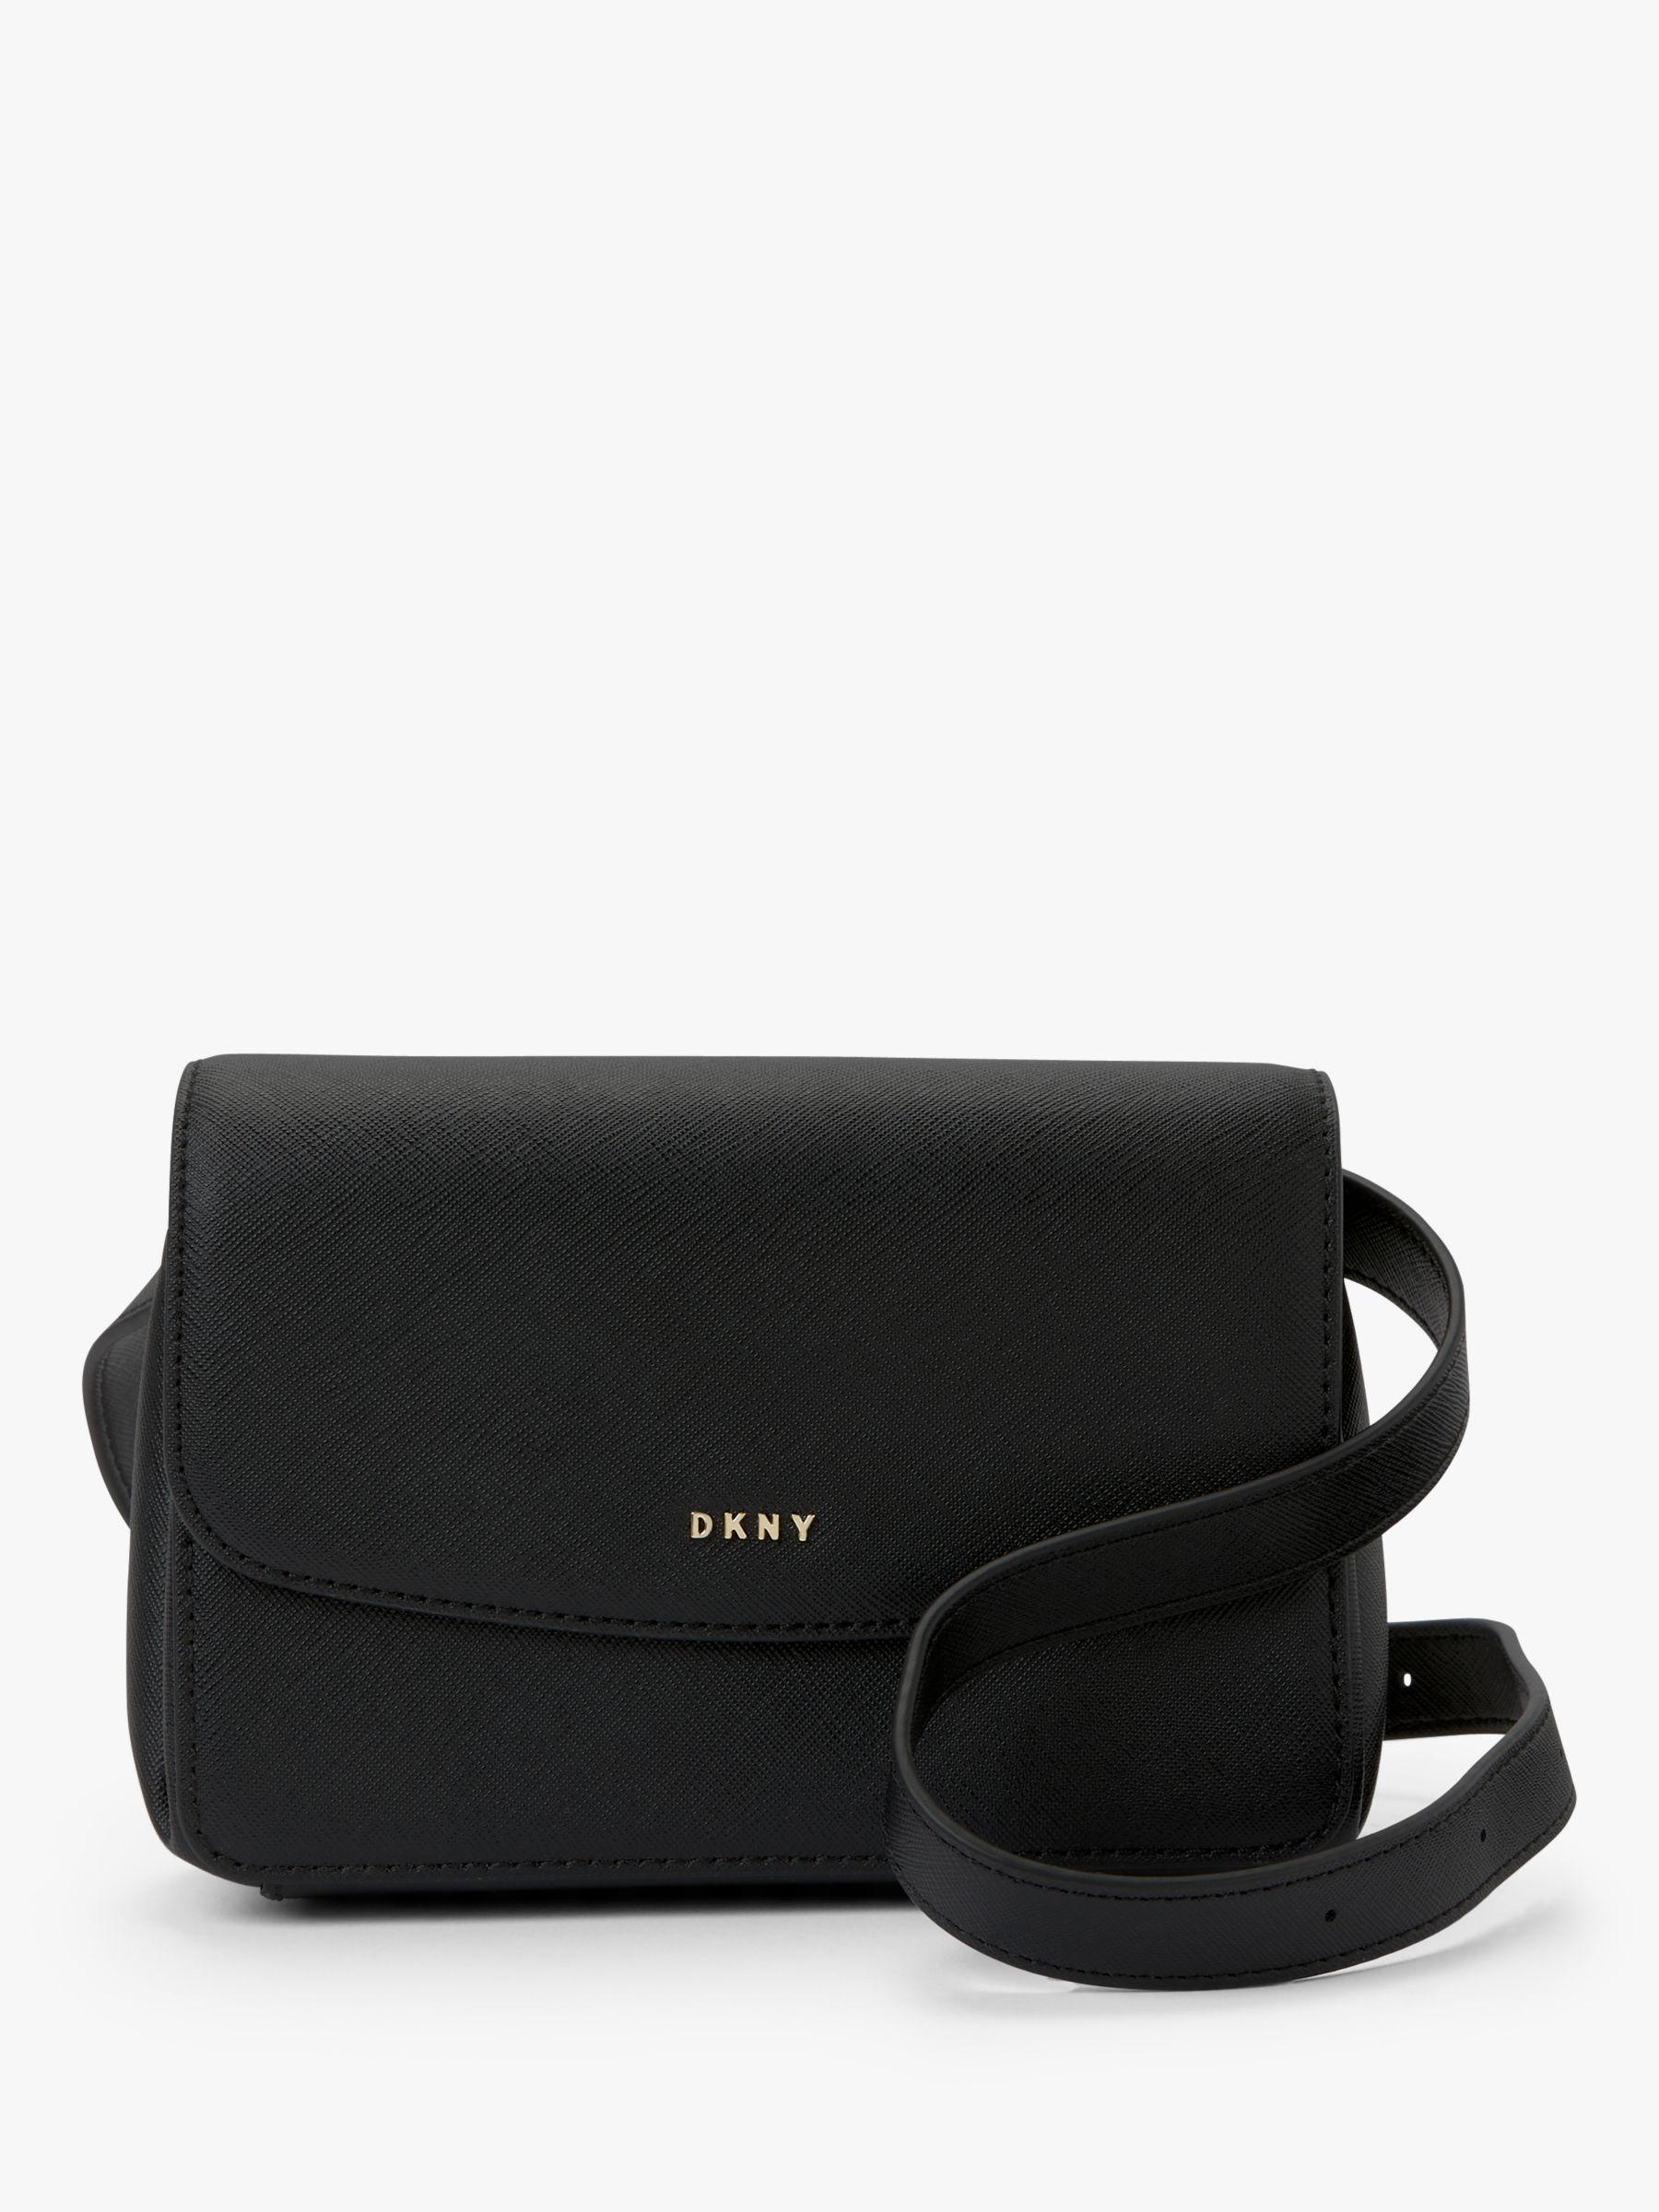 DKNY Item Leather Belt Bag, Black/Gold at John Lewis & Partners